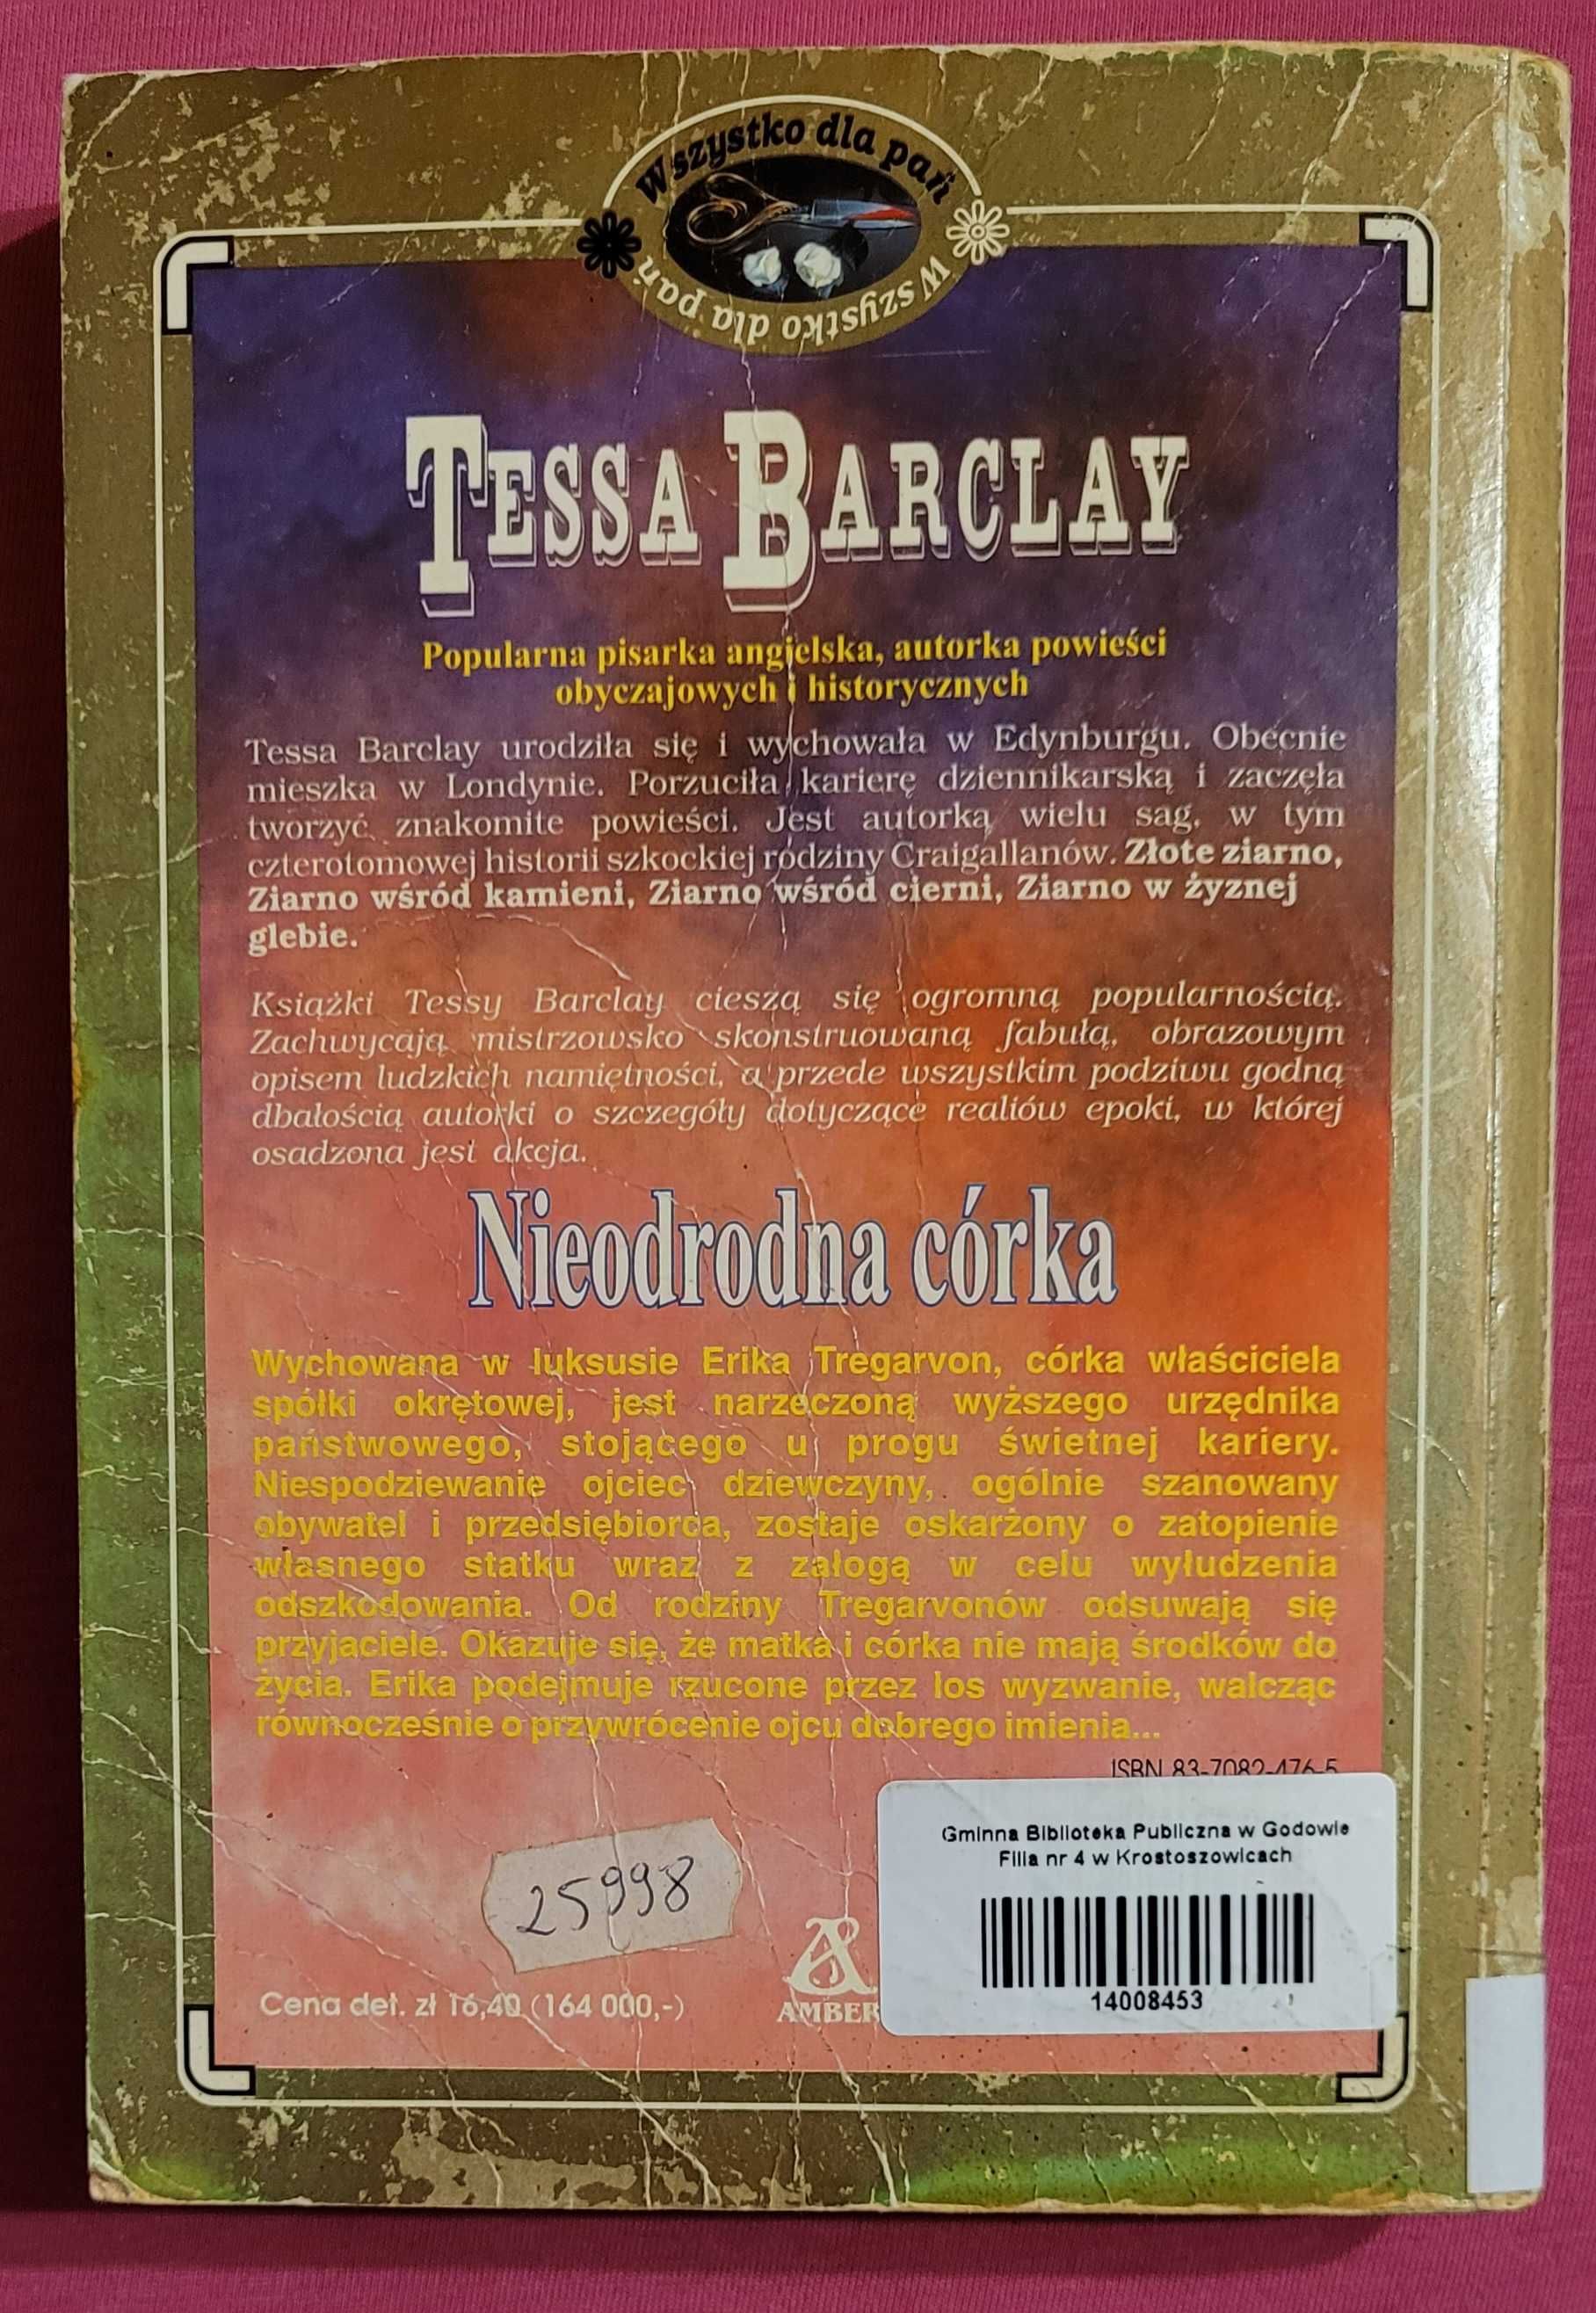 Romans historyczny "NIEODRODNA CORKA" autorki Tessy Barclay.